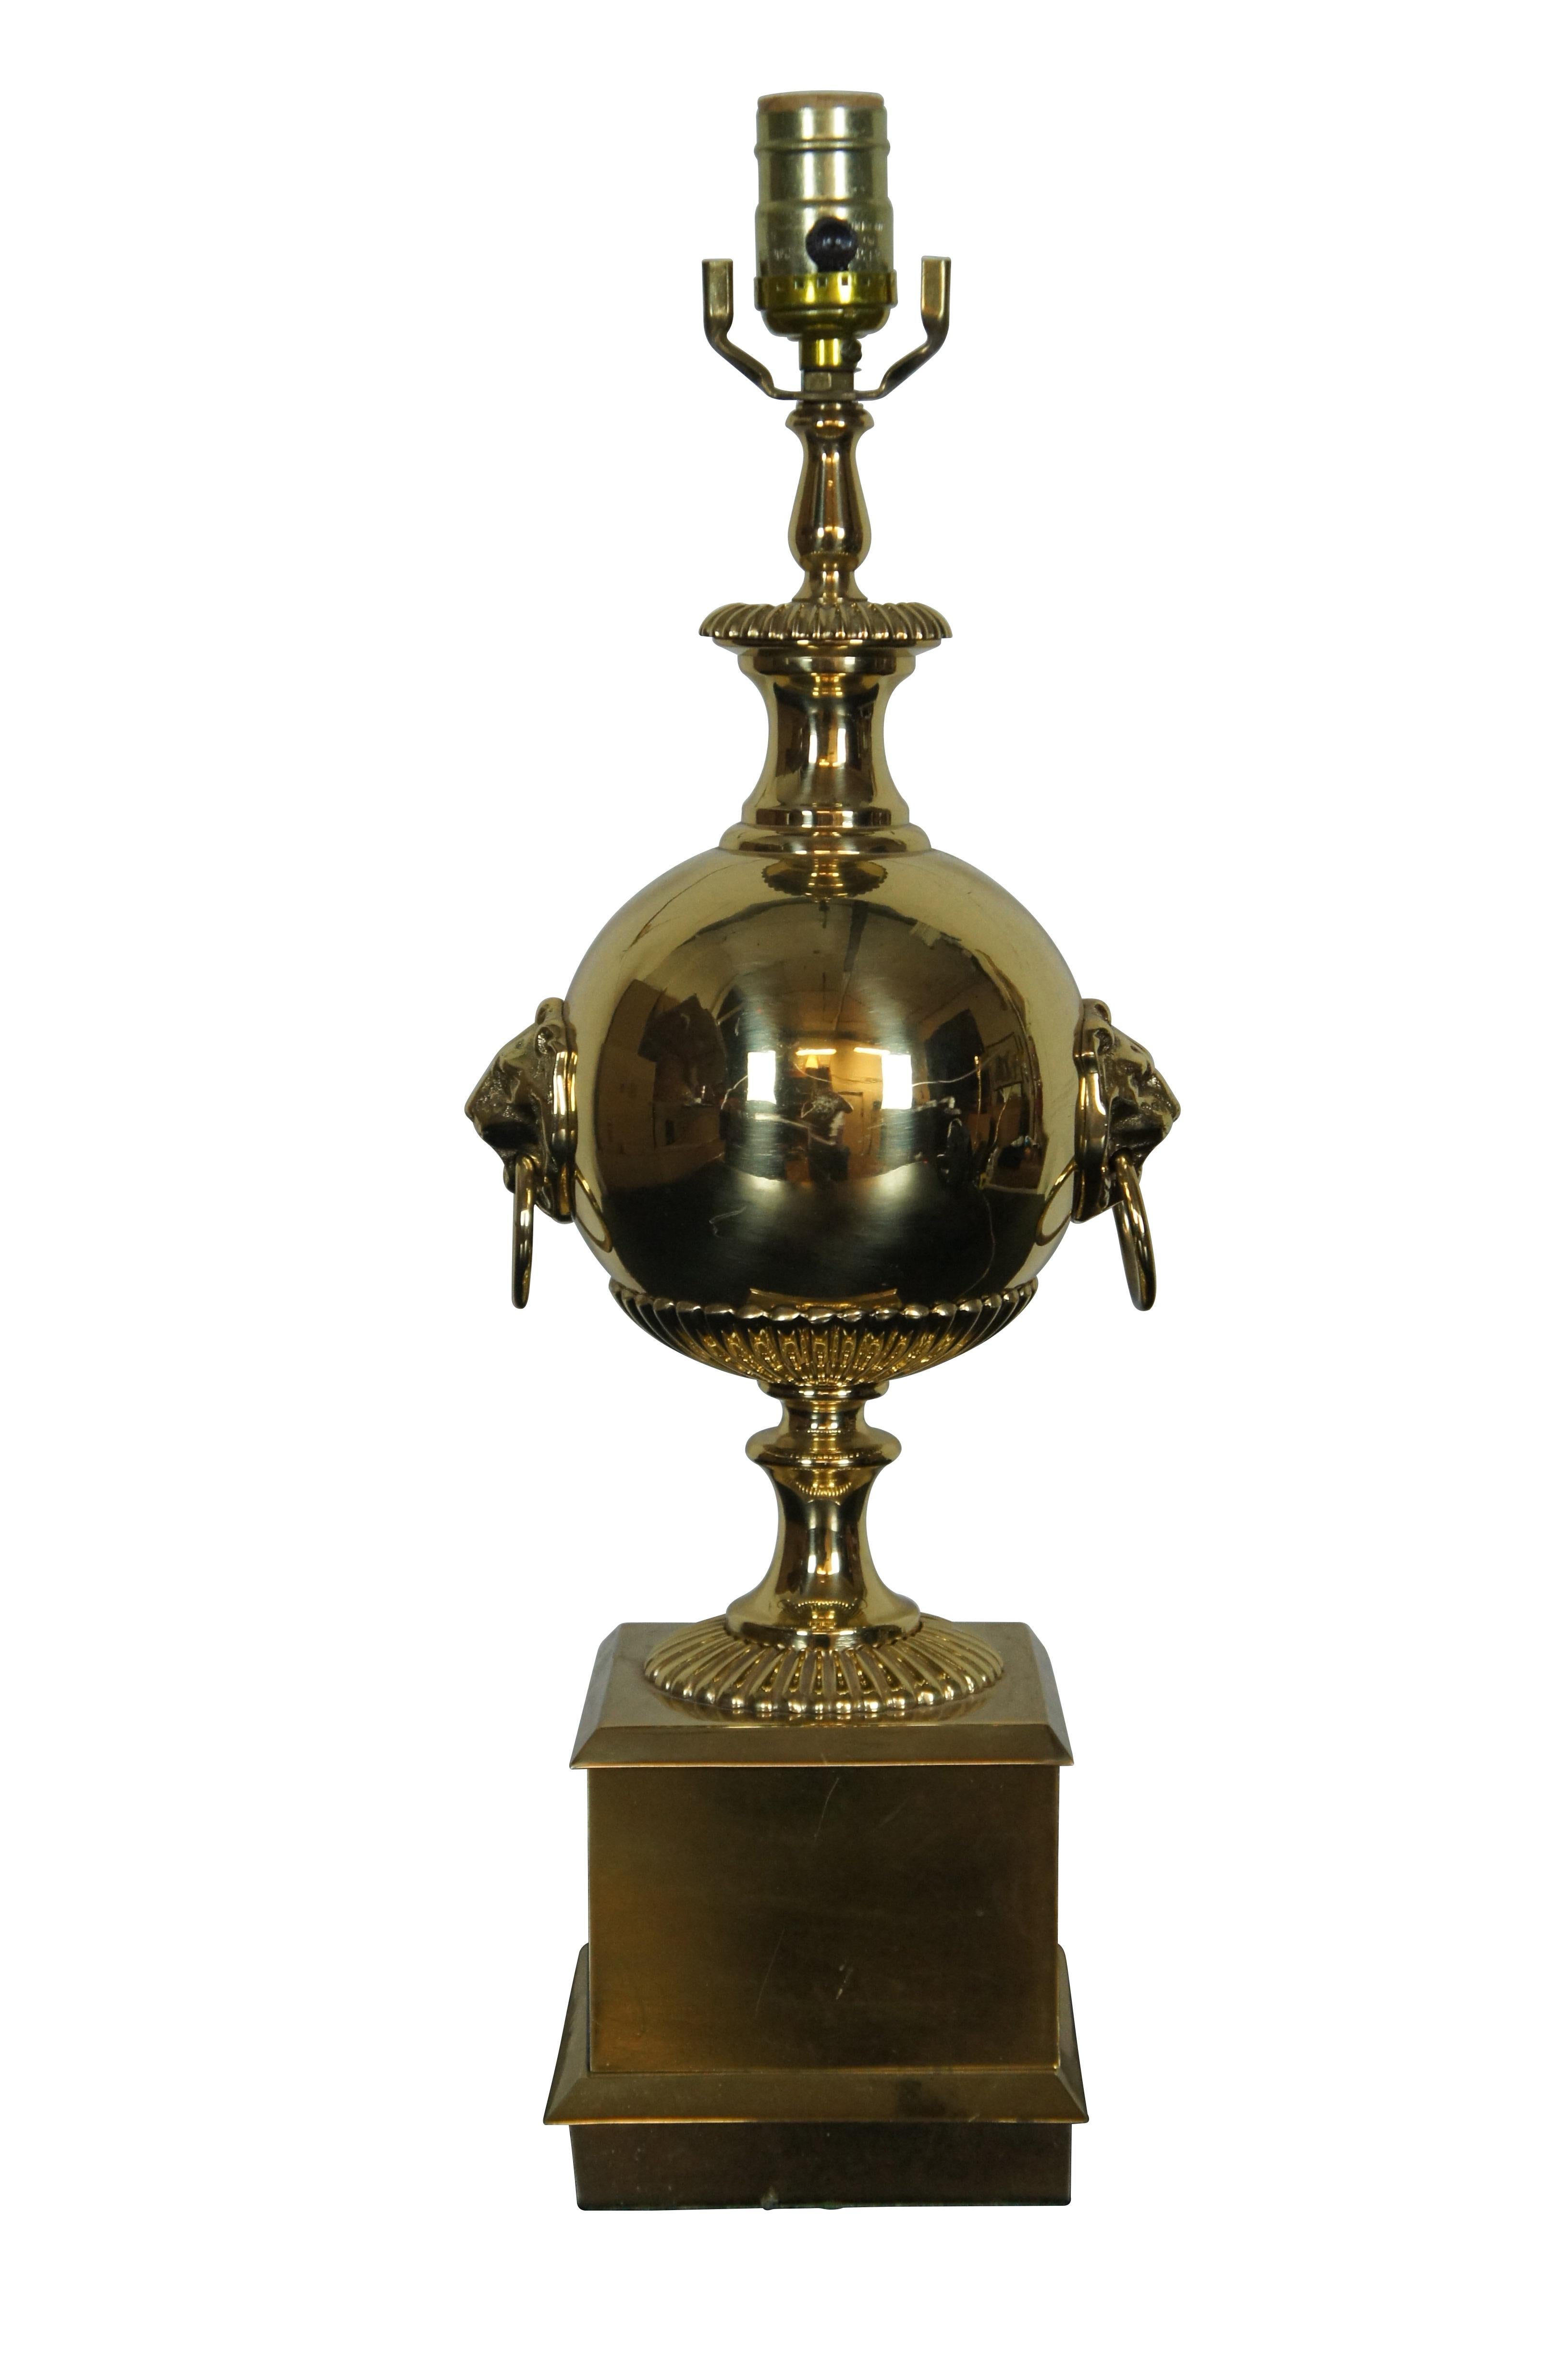 Vintage Messing Kanonenkugel Trophäe Lampe mit runden Urne geformt Körper mit Löwenkopf Ring Klopfer und quadratischen Sockel Basis.

ABMESSUNGEN:
6